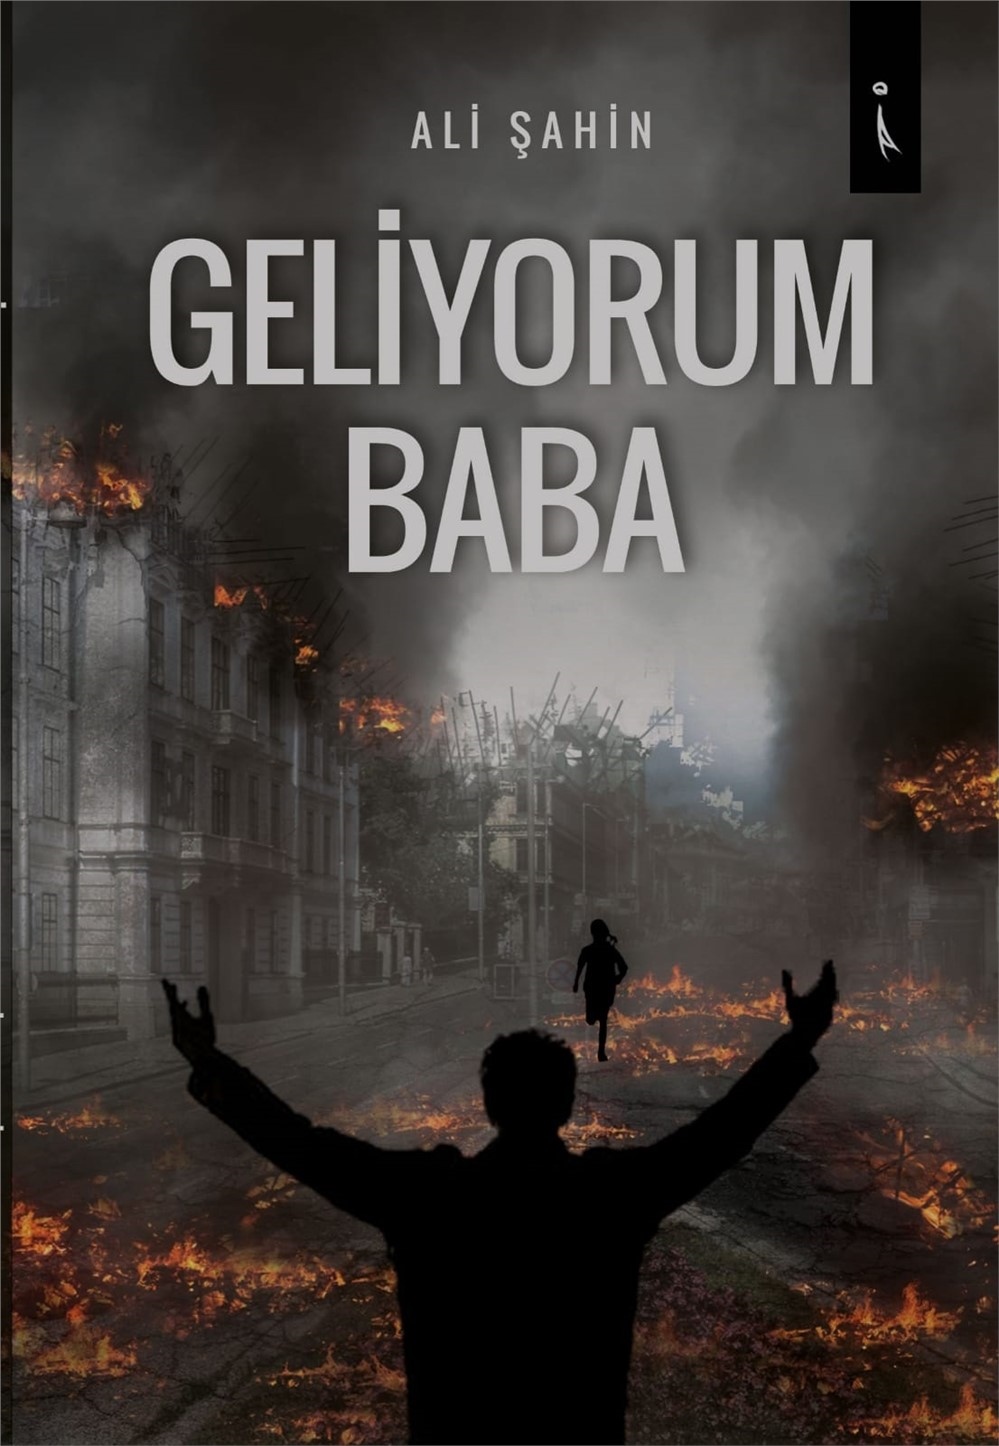 Mersin TEM Kadrosunda Görev Yapan Polis Memuru Ali Şahin’in Yazdığı ''Geliyorum Baba'' İsimli Kitabı Yayımlandı